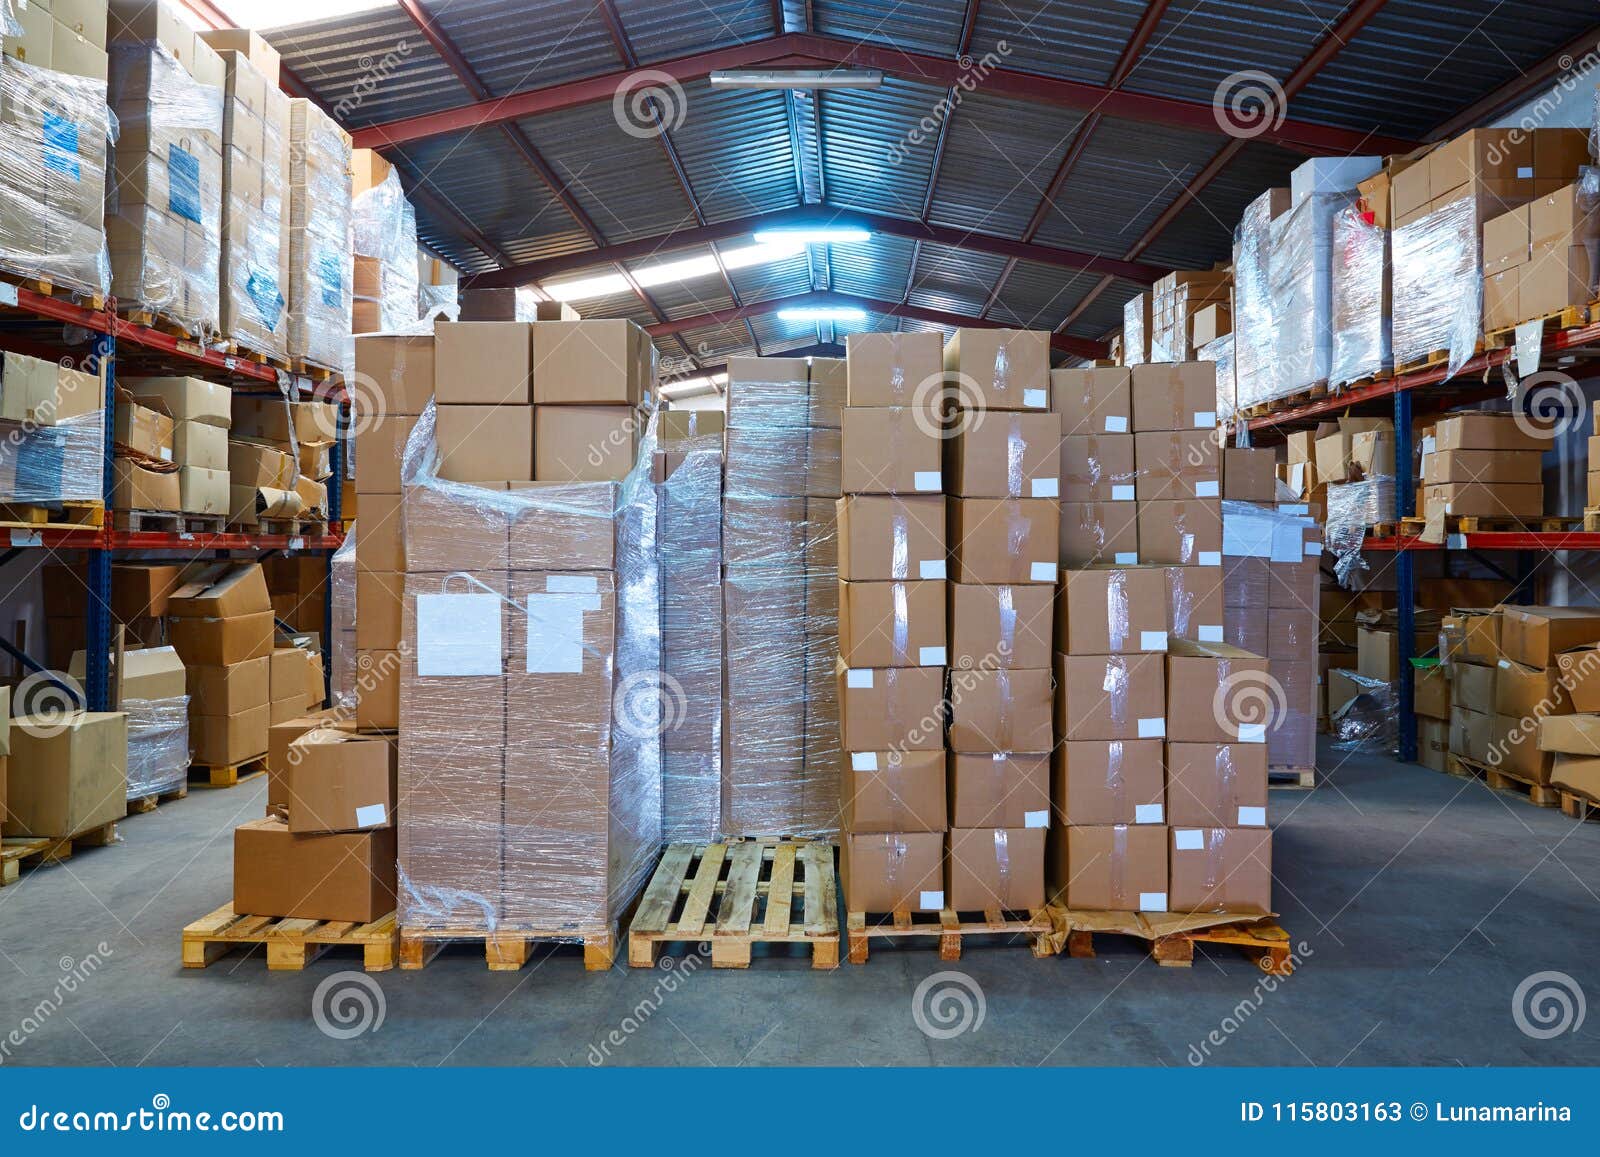 Упаковка товара на вб. Картонные коробки склад. Склад с коробками. Упаковка коробок на складе. Склад с картонными коробками.